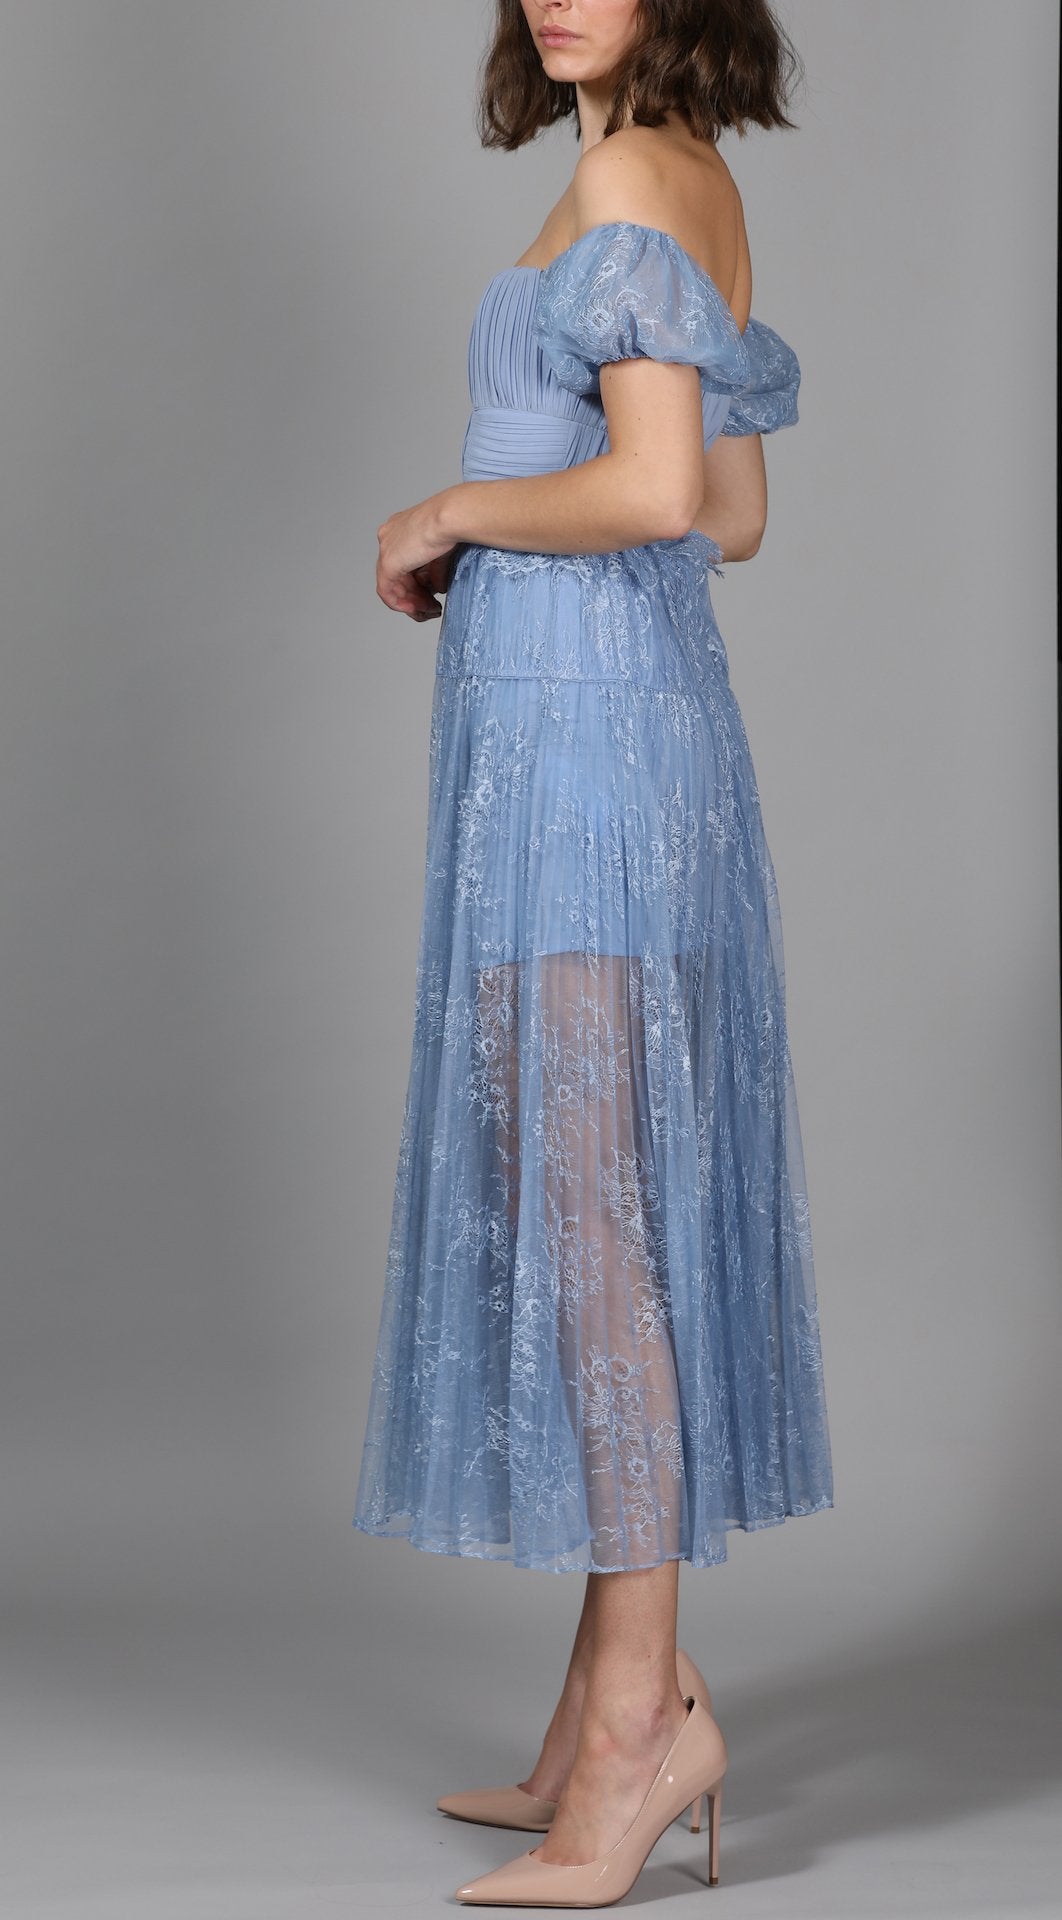 Blue Lace Off Shoulder Floral Scallop Dress